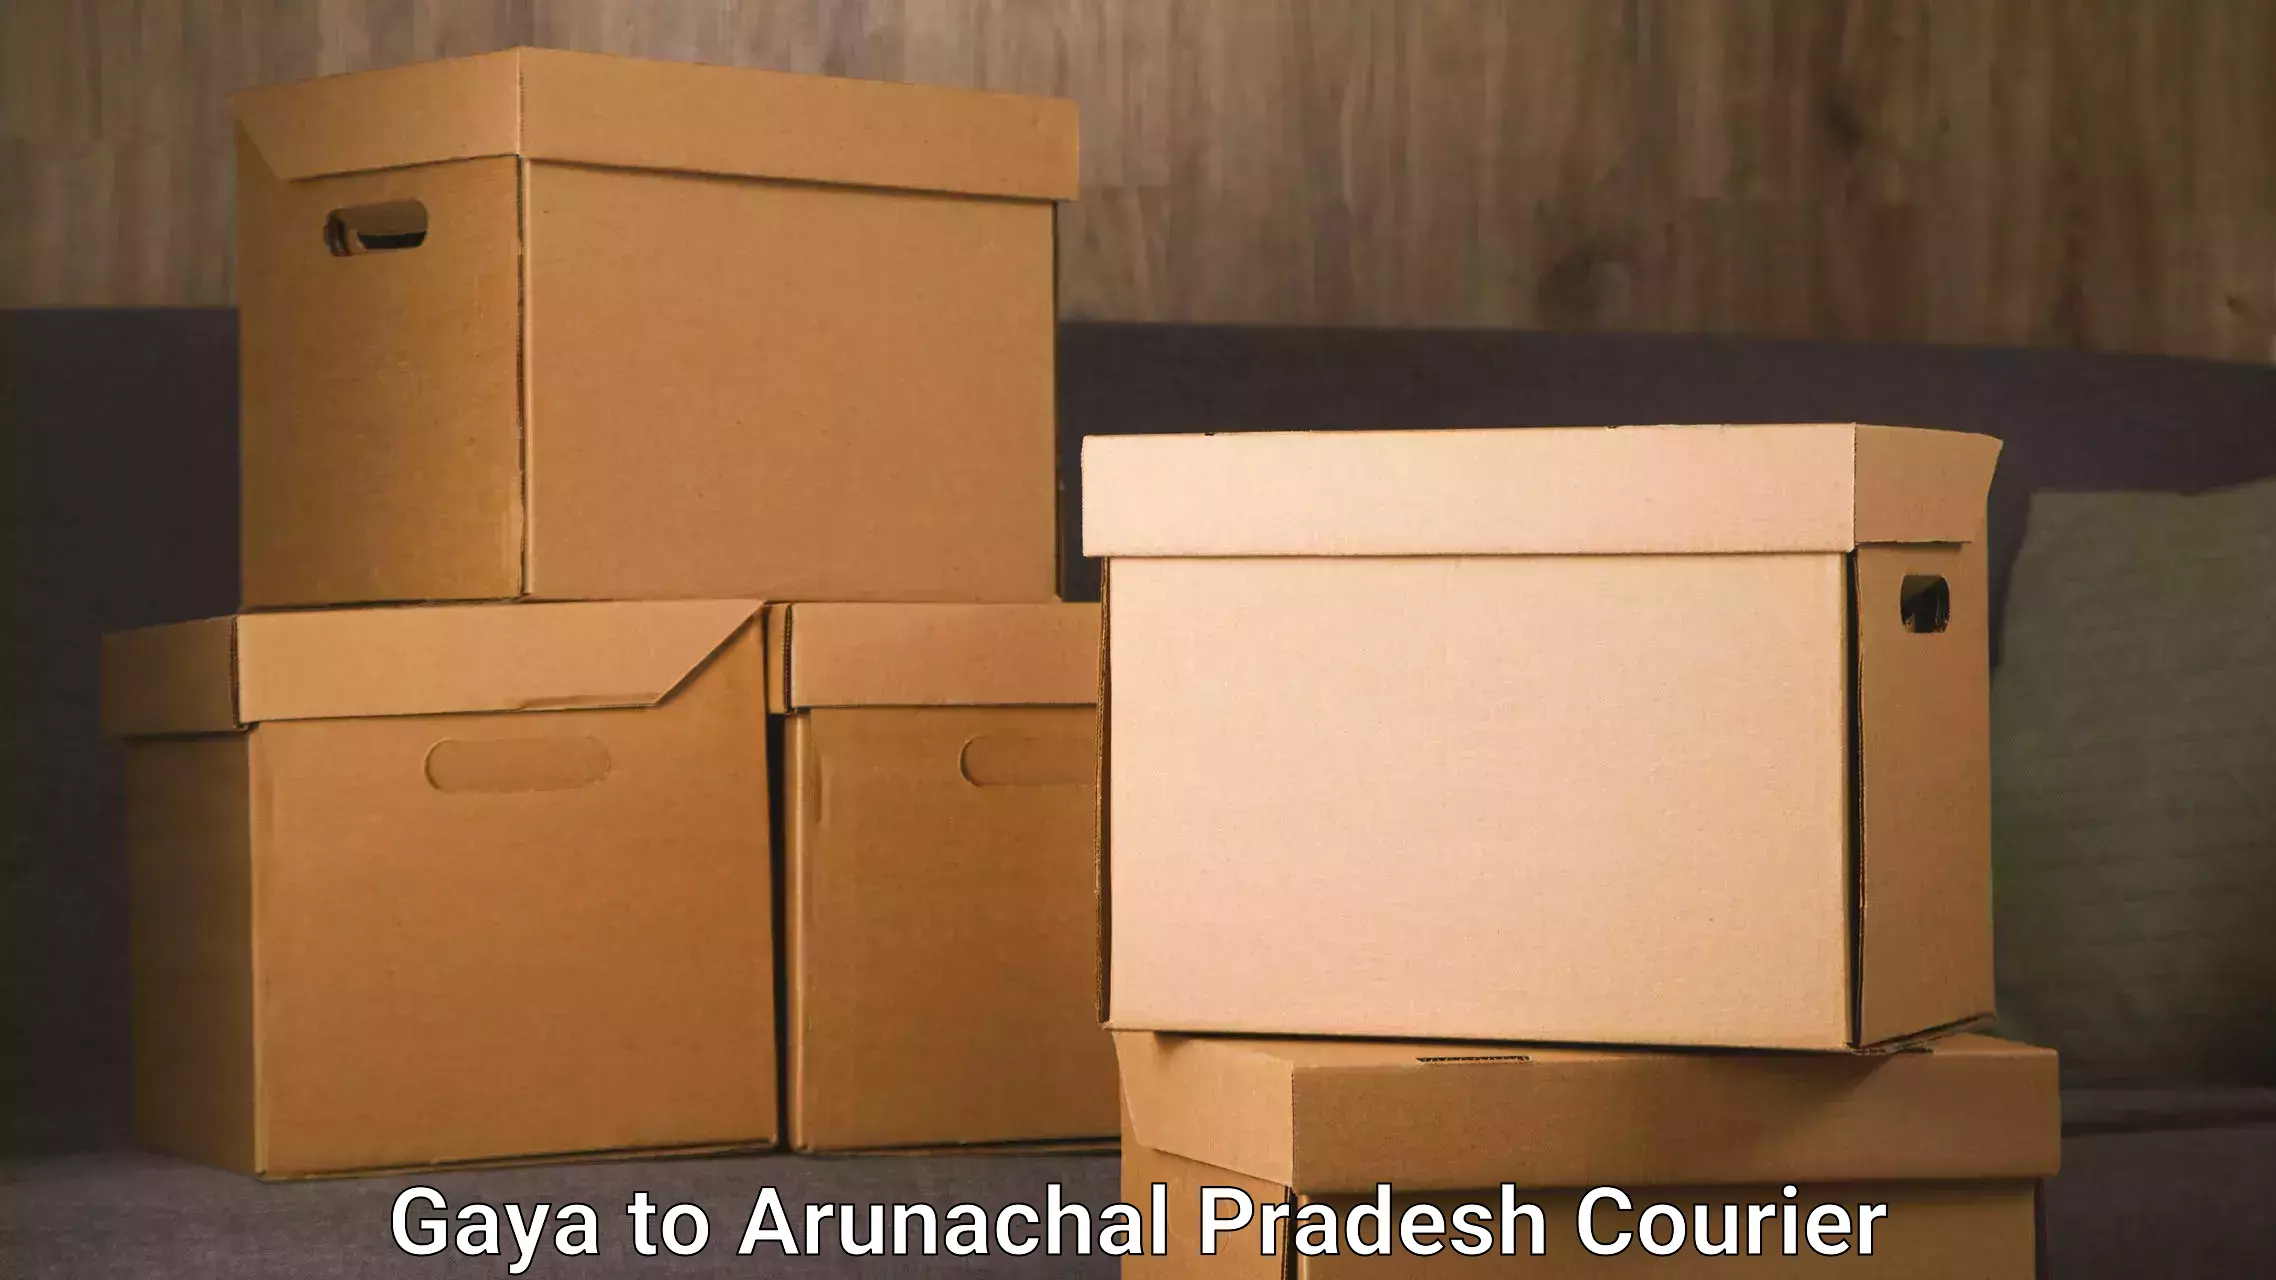 Furniture transport services in Gaya to Arunachal Pradesh